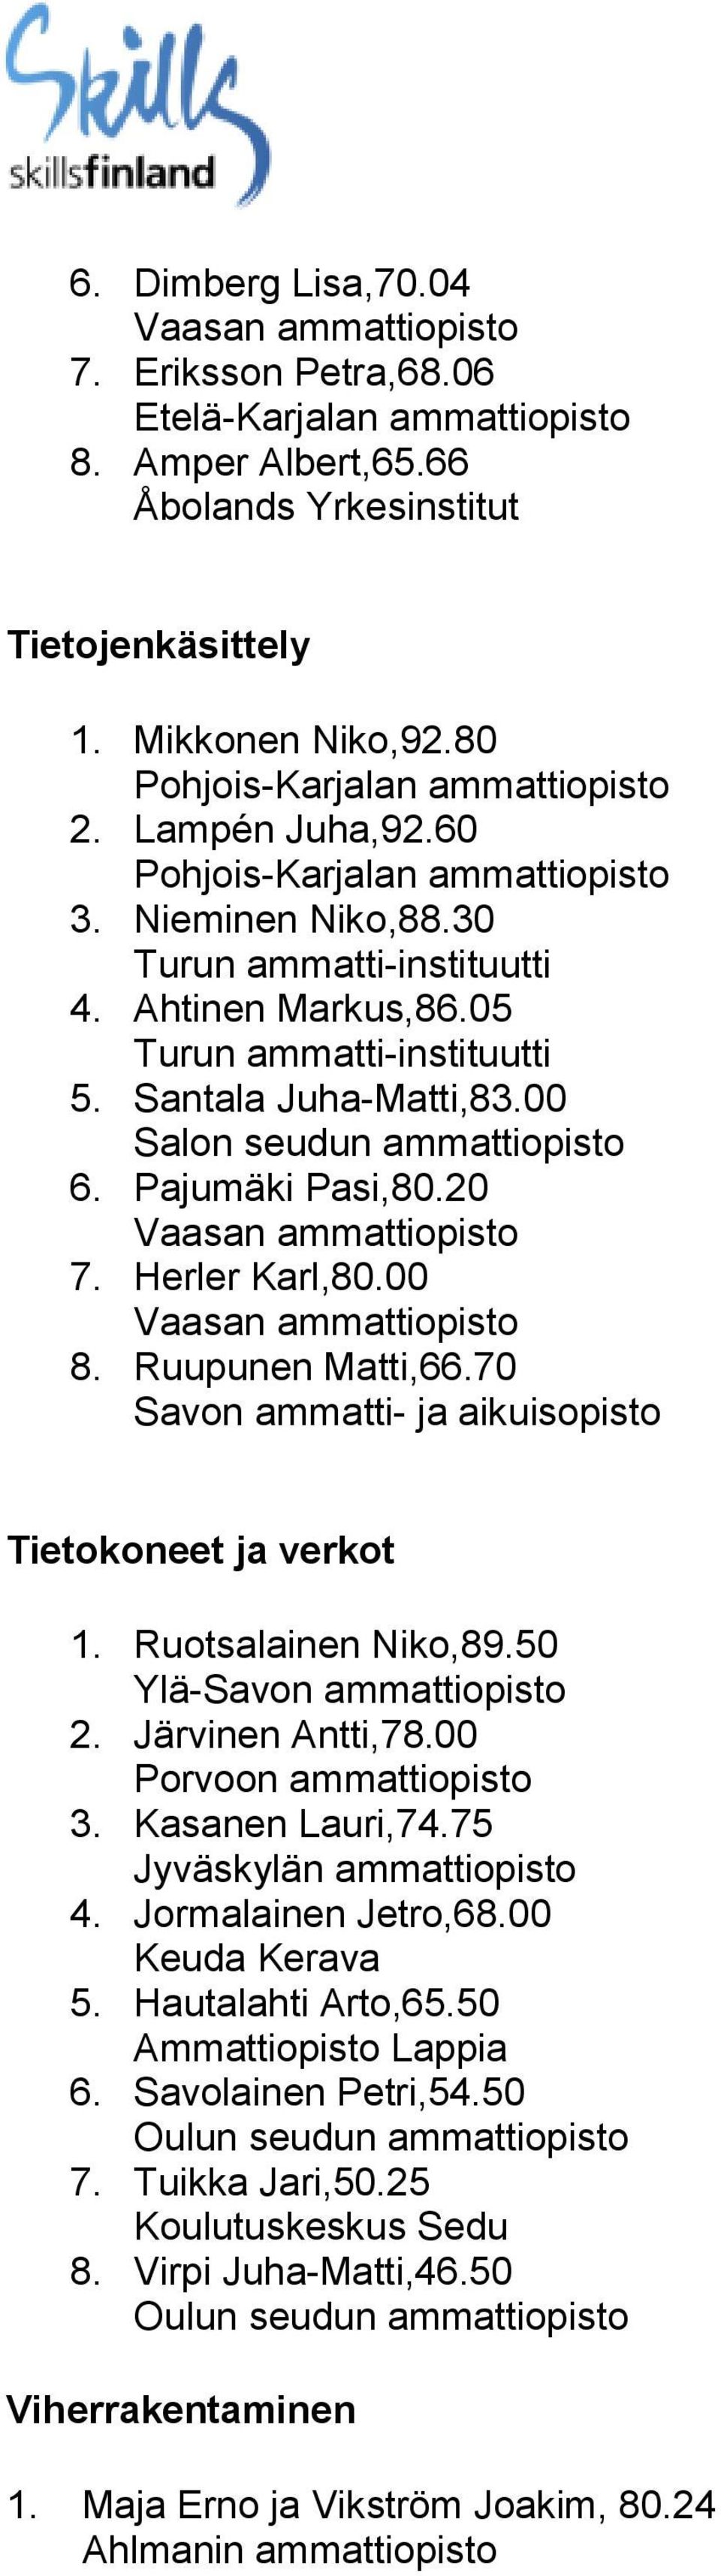 70 Tietokoneet ja verkot 1. Ruotsalainen Niko,89.50 Ylä-Savon ammattiopisto 2. Järvinen Antti,78.00 Porvoon ammattiopisto 3. Kasanen Lauri,74.75 Jyväskylän ammattiopisto 4.